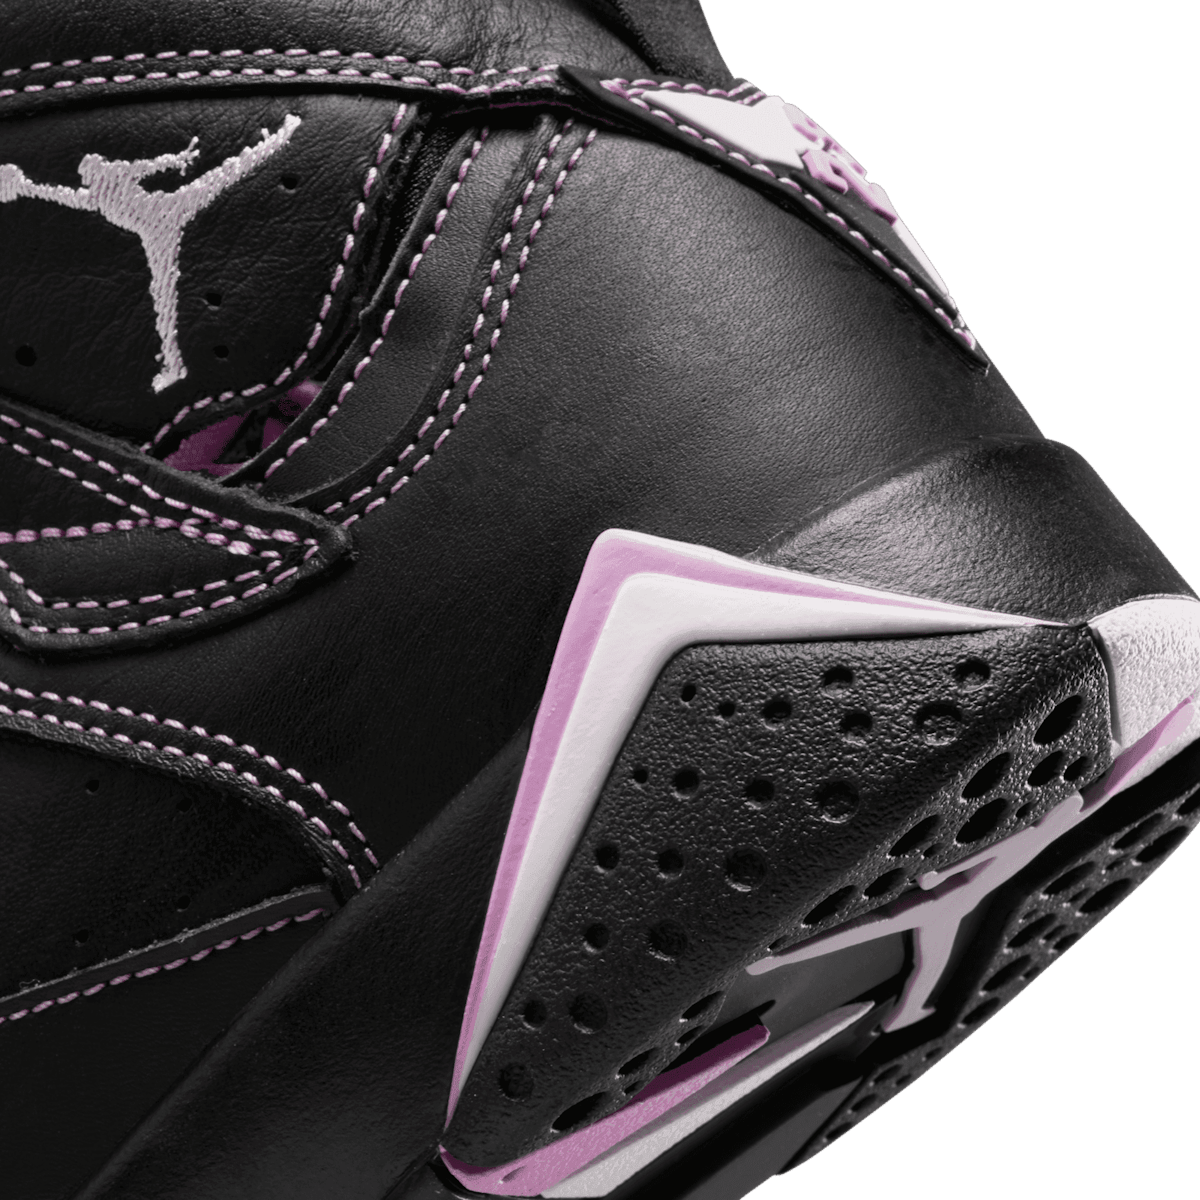 Air Jordan 7 Retro Barely Grape (GS) Angle 5